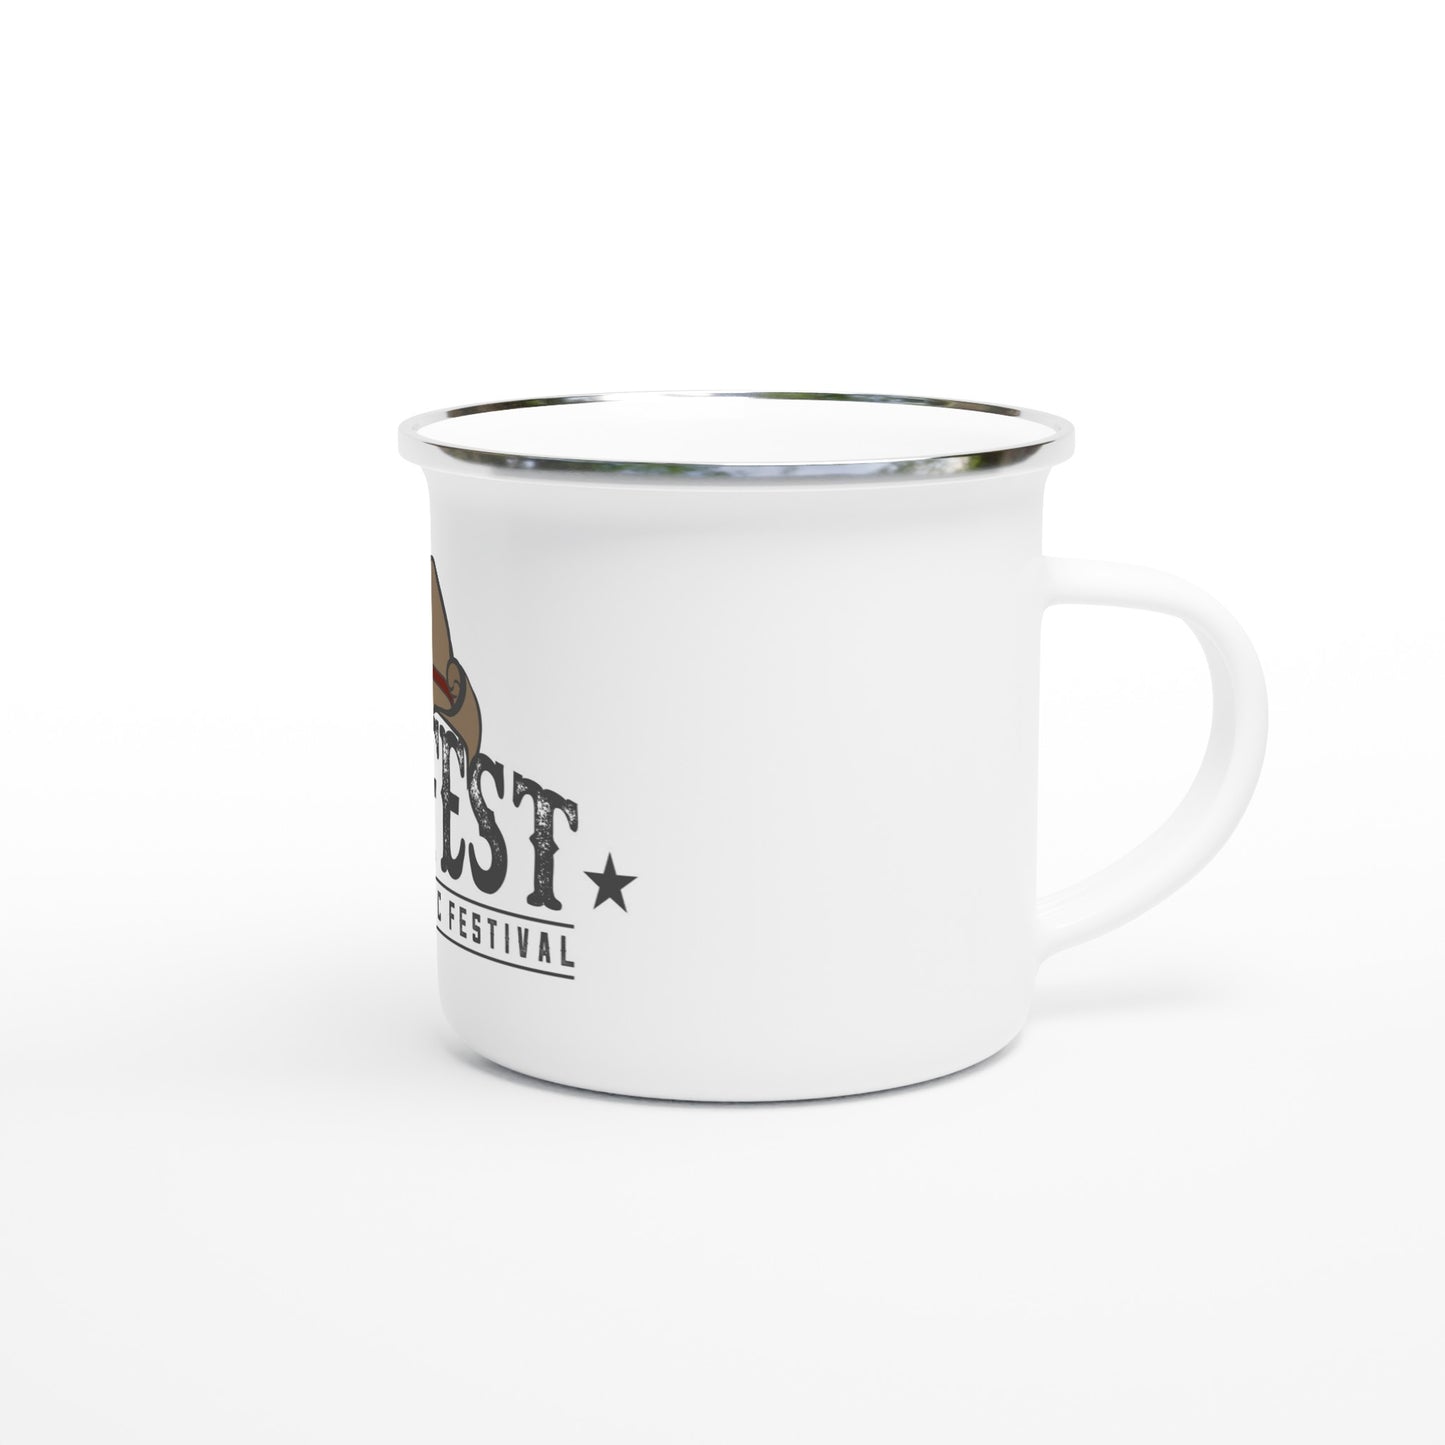 Sunfest - Logotype - White 12oz Enamel Mug